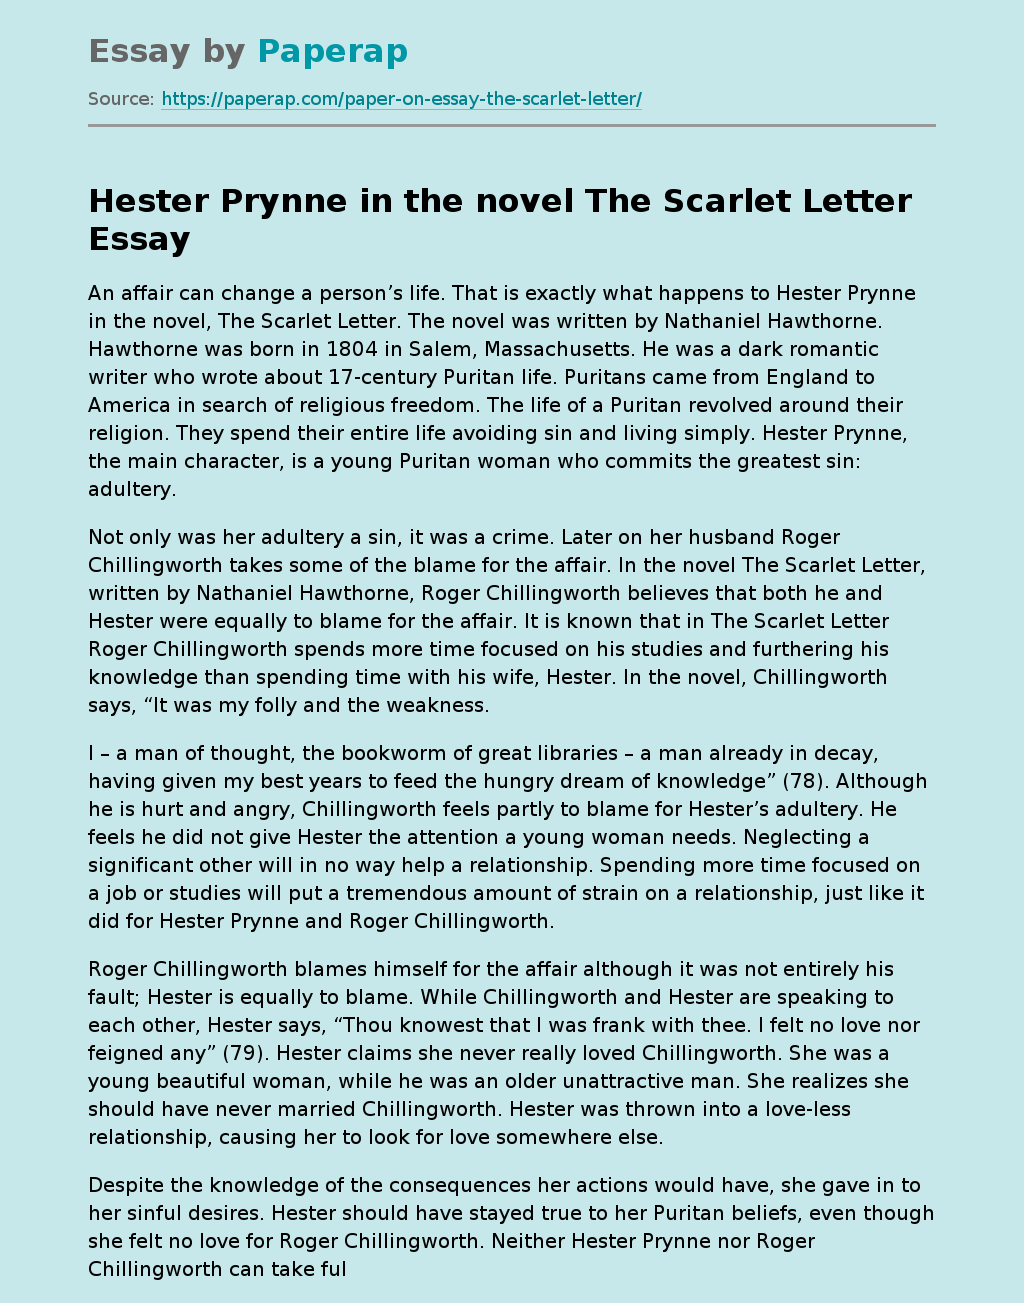 Hester Prynne in the novel The Scarlet Letter